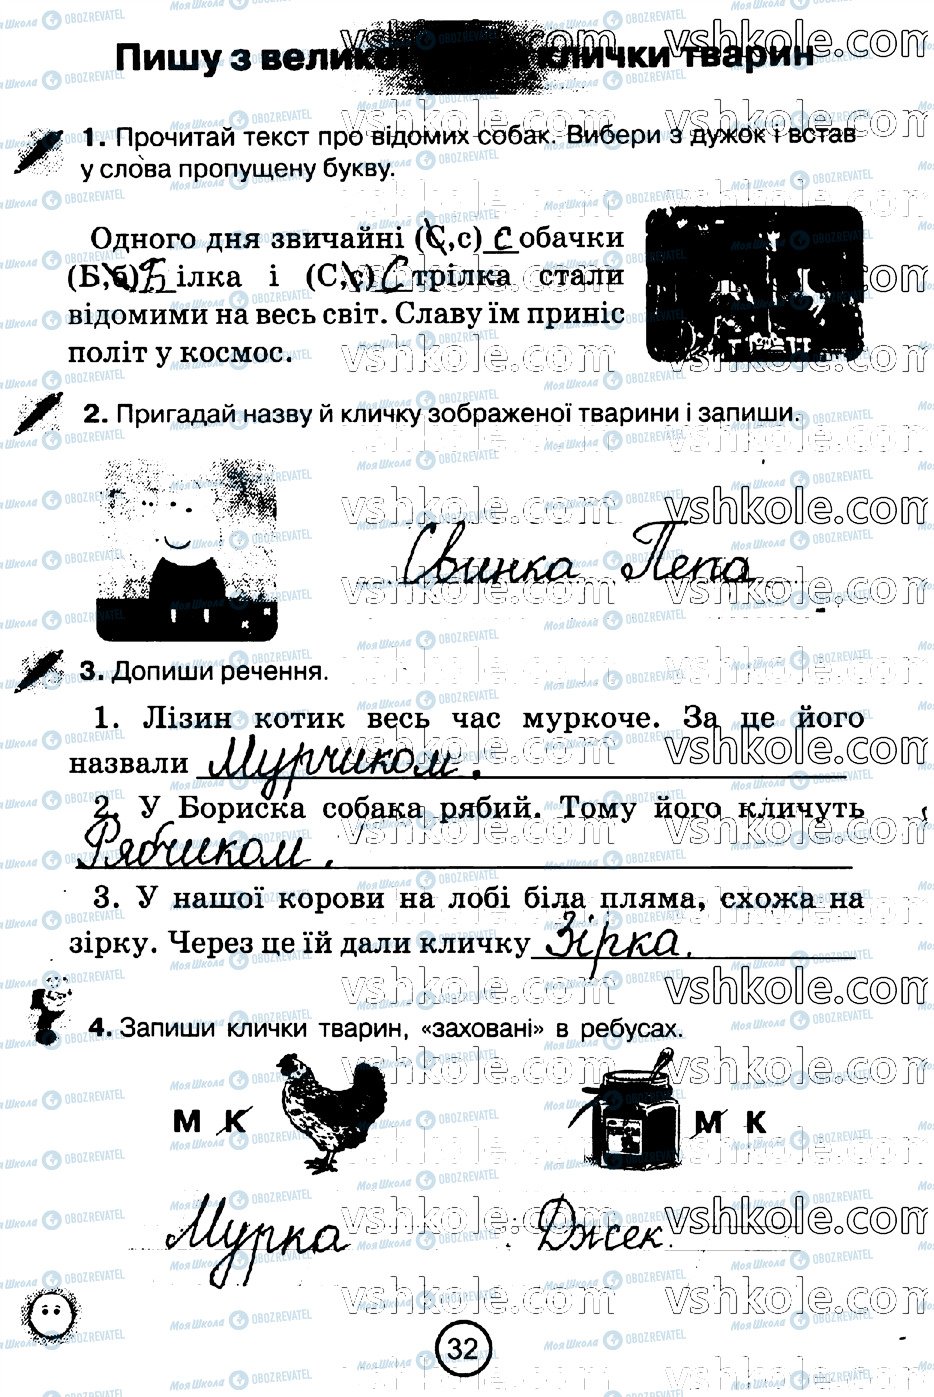 ГДЗ Укр мова 2 класс страница стр32